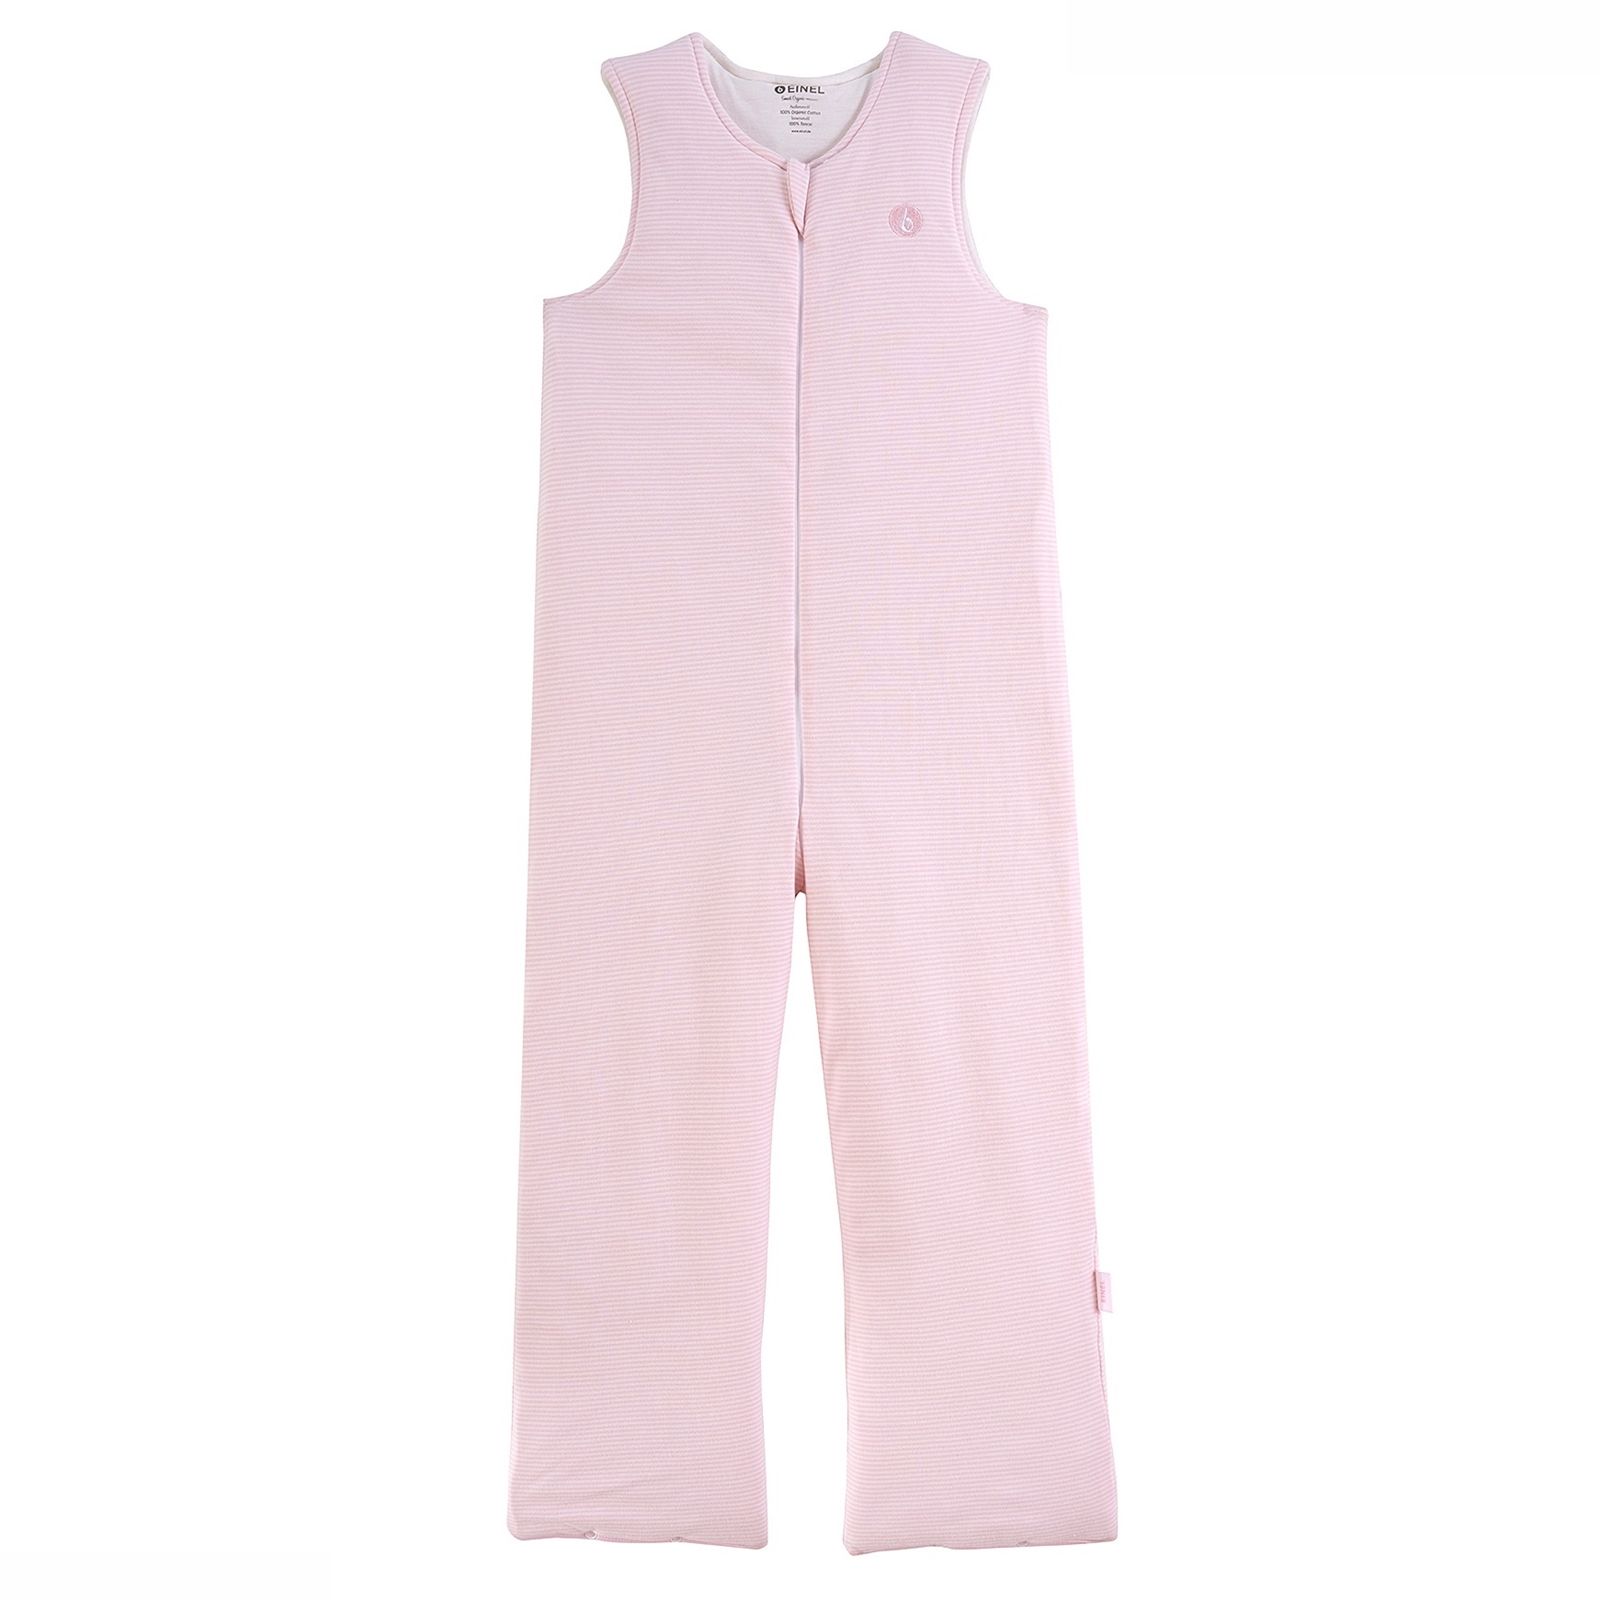 Schlafsack Schlafsack mit Bein rosa/weiß 100 cm Einel 100% Baumwolle gestreift